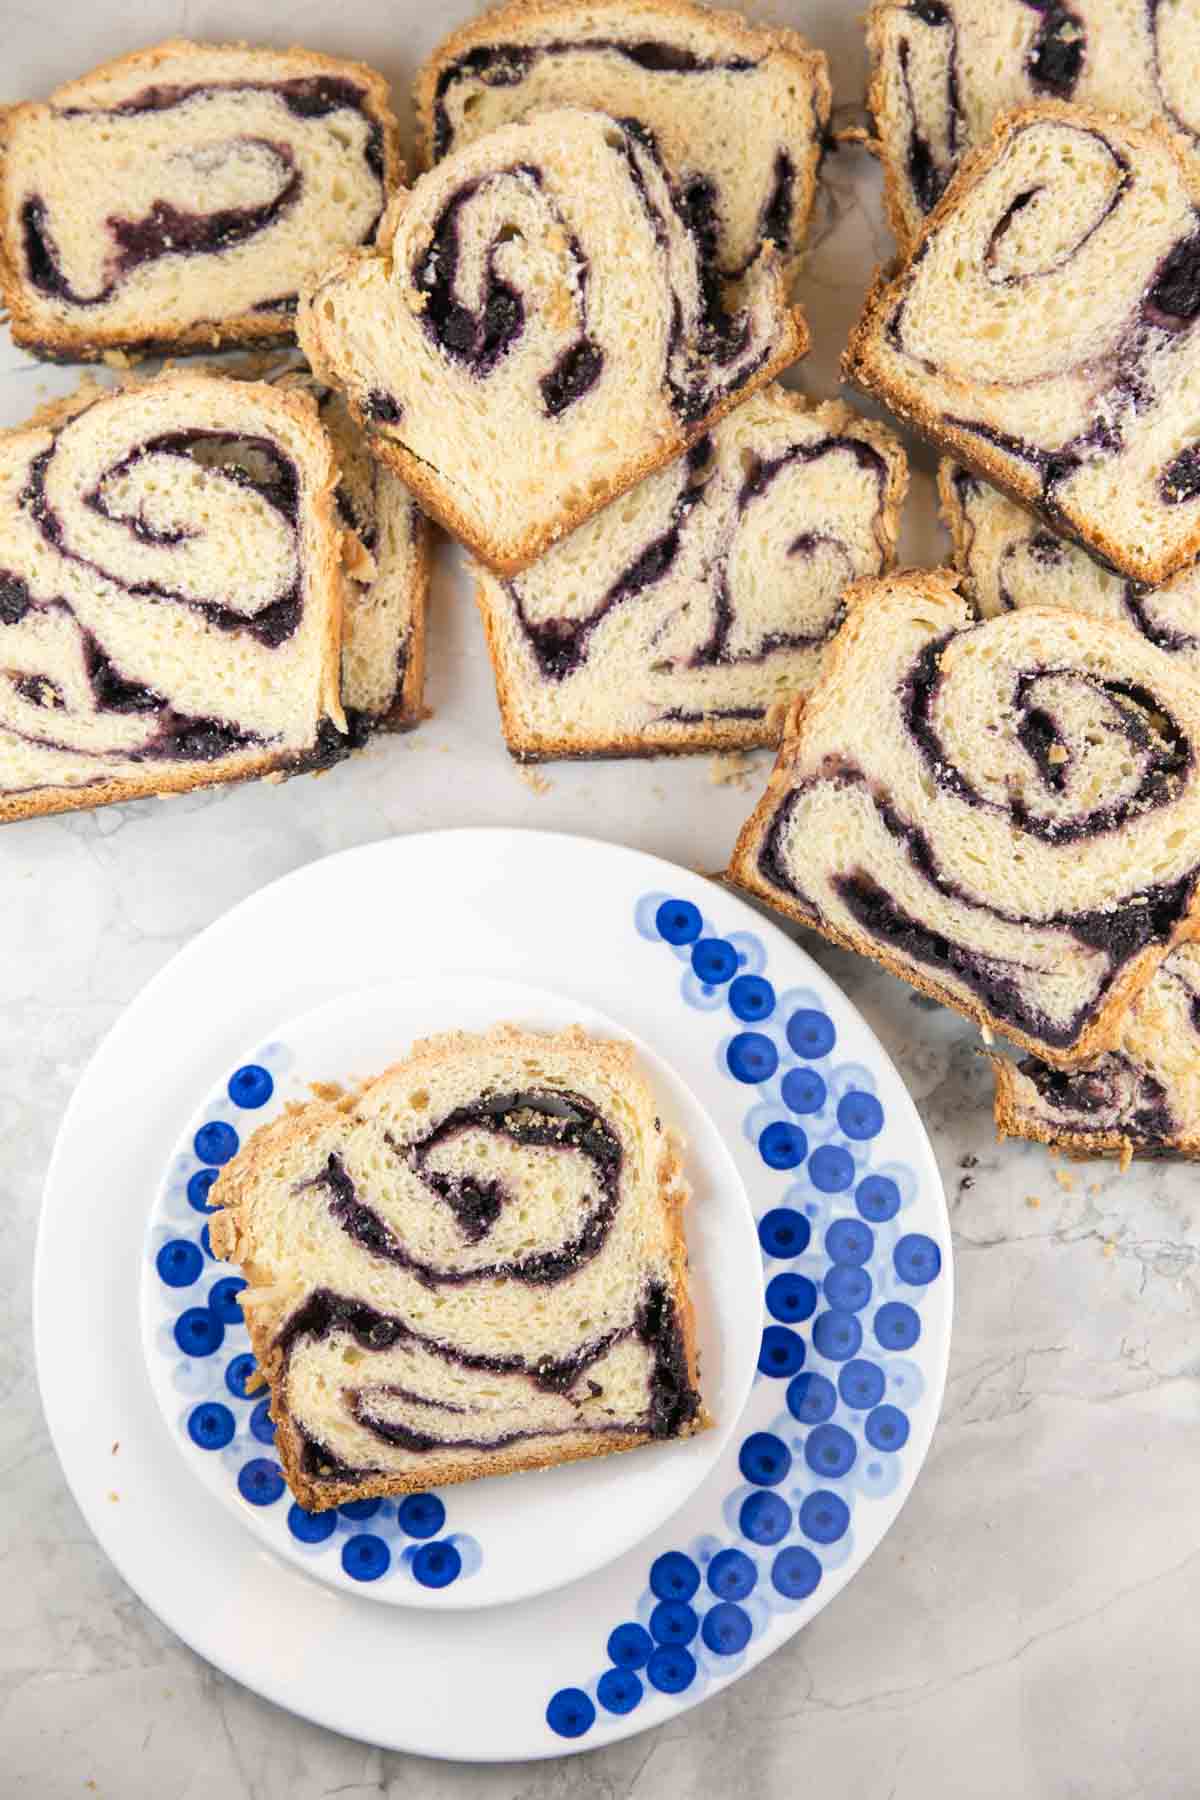 slice of swirled blueberry babka on a decorative blueberry plate surrounded by slices of babka